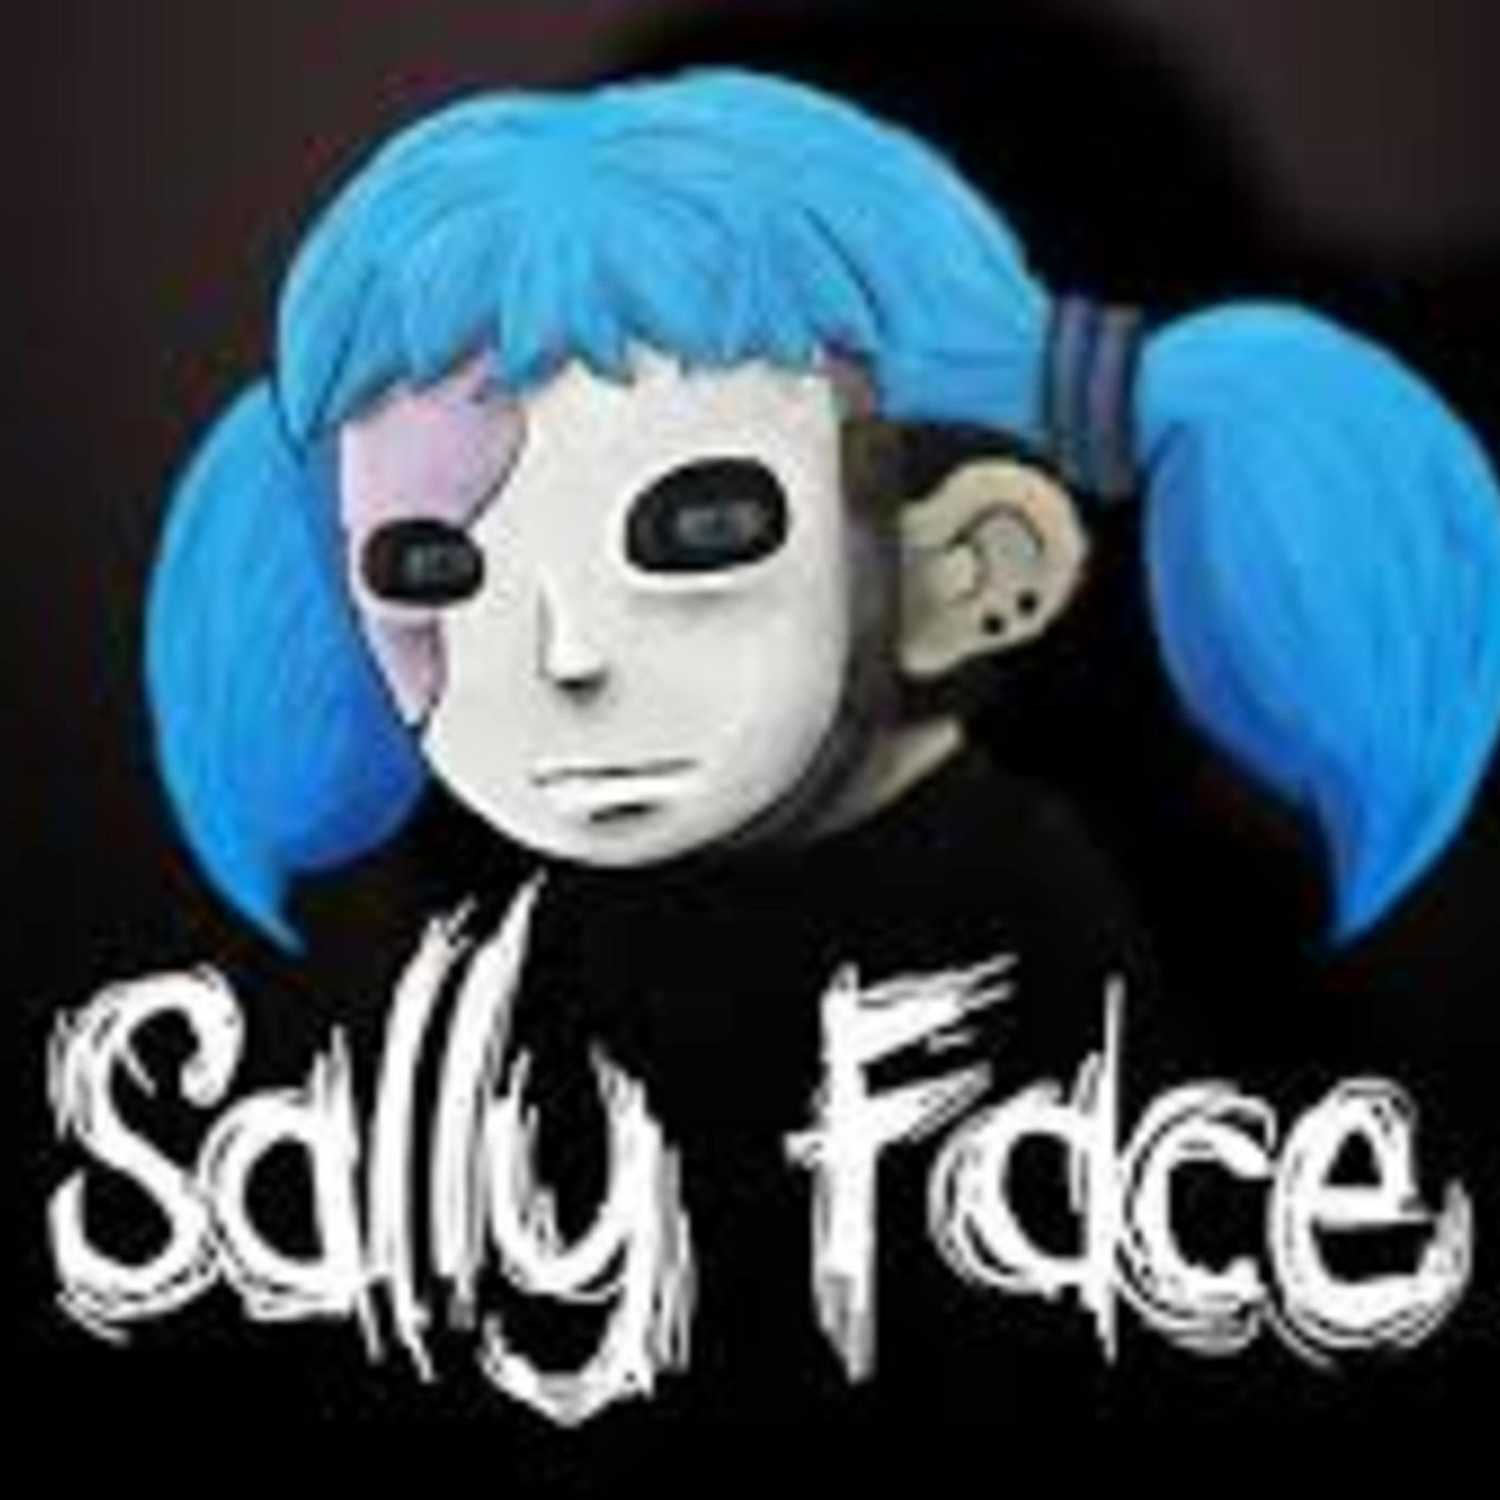 sally face theme song (memories and dreams)